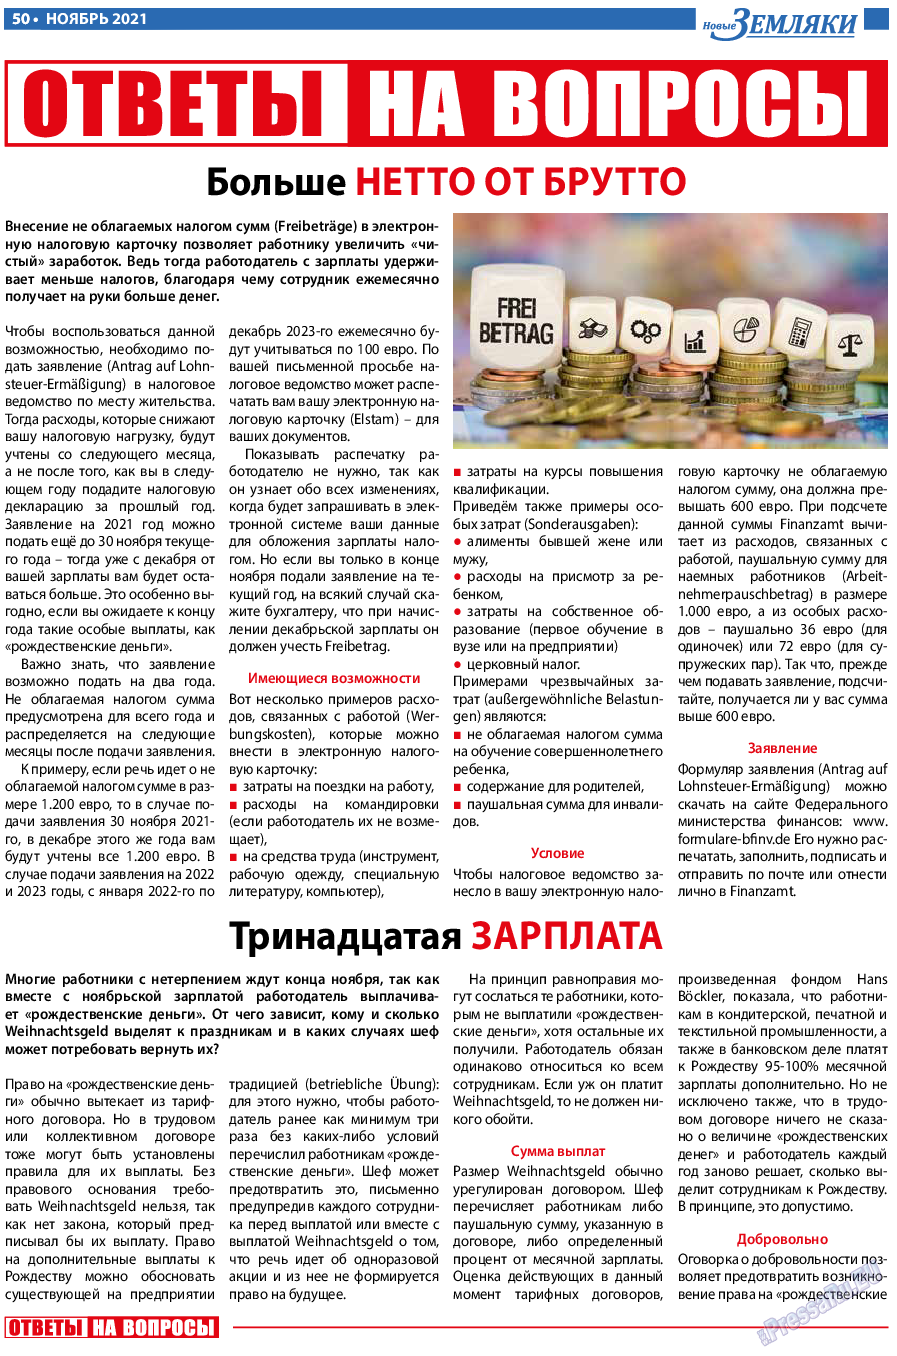 Новые Земляки, газета. 2021 №11 стр.50